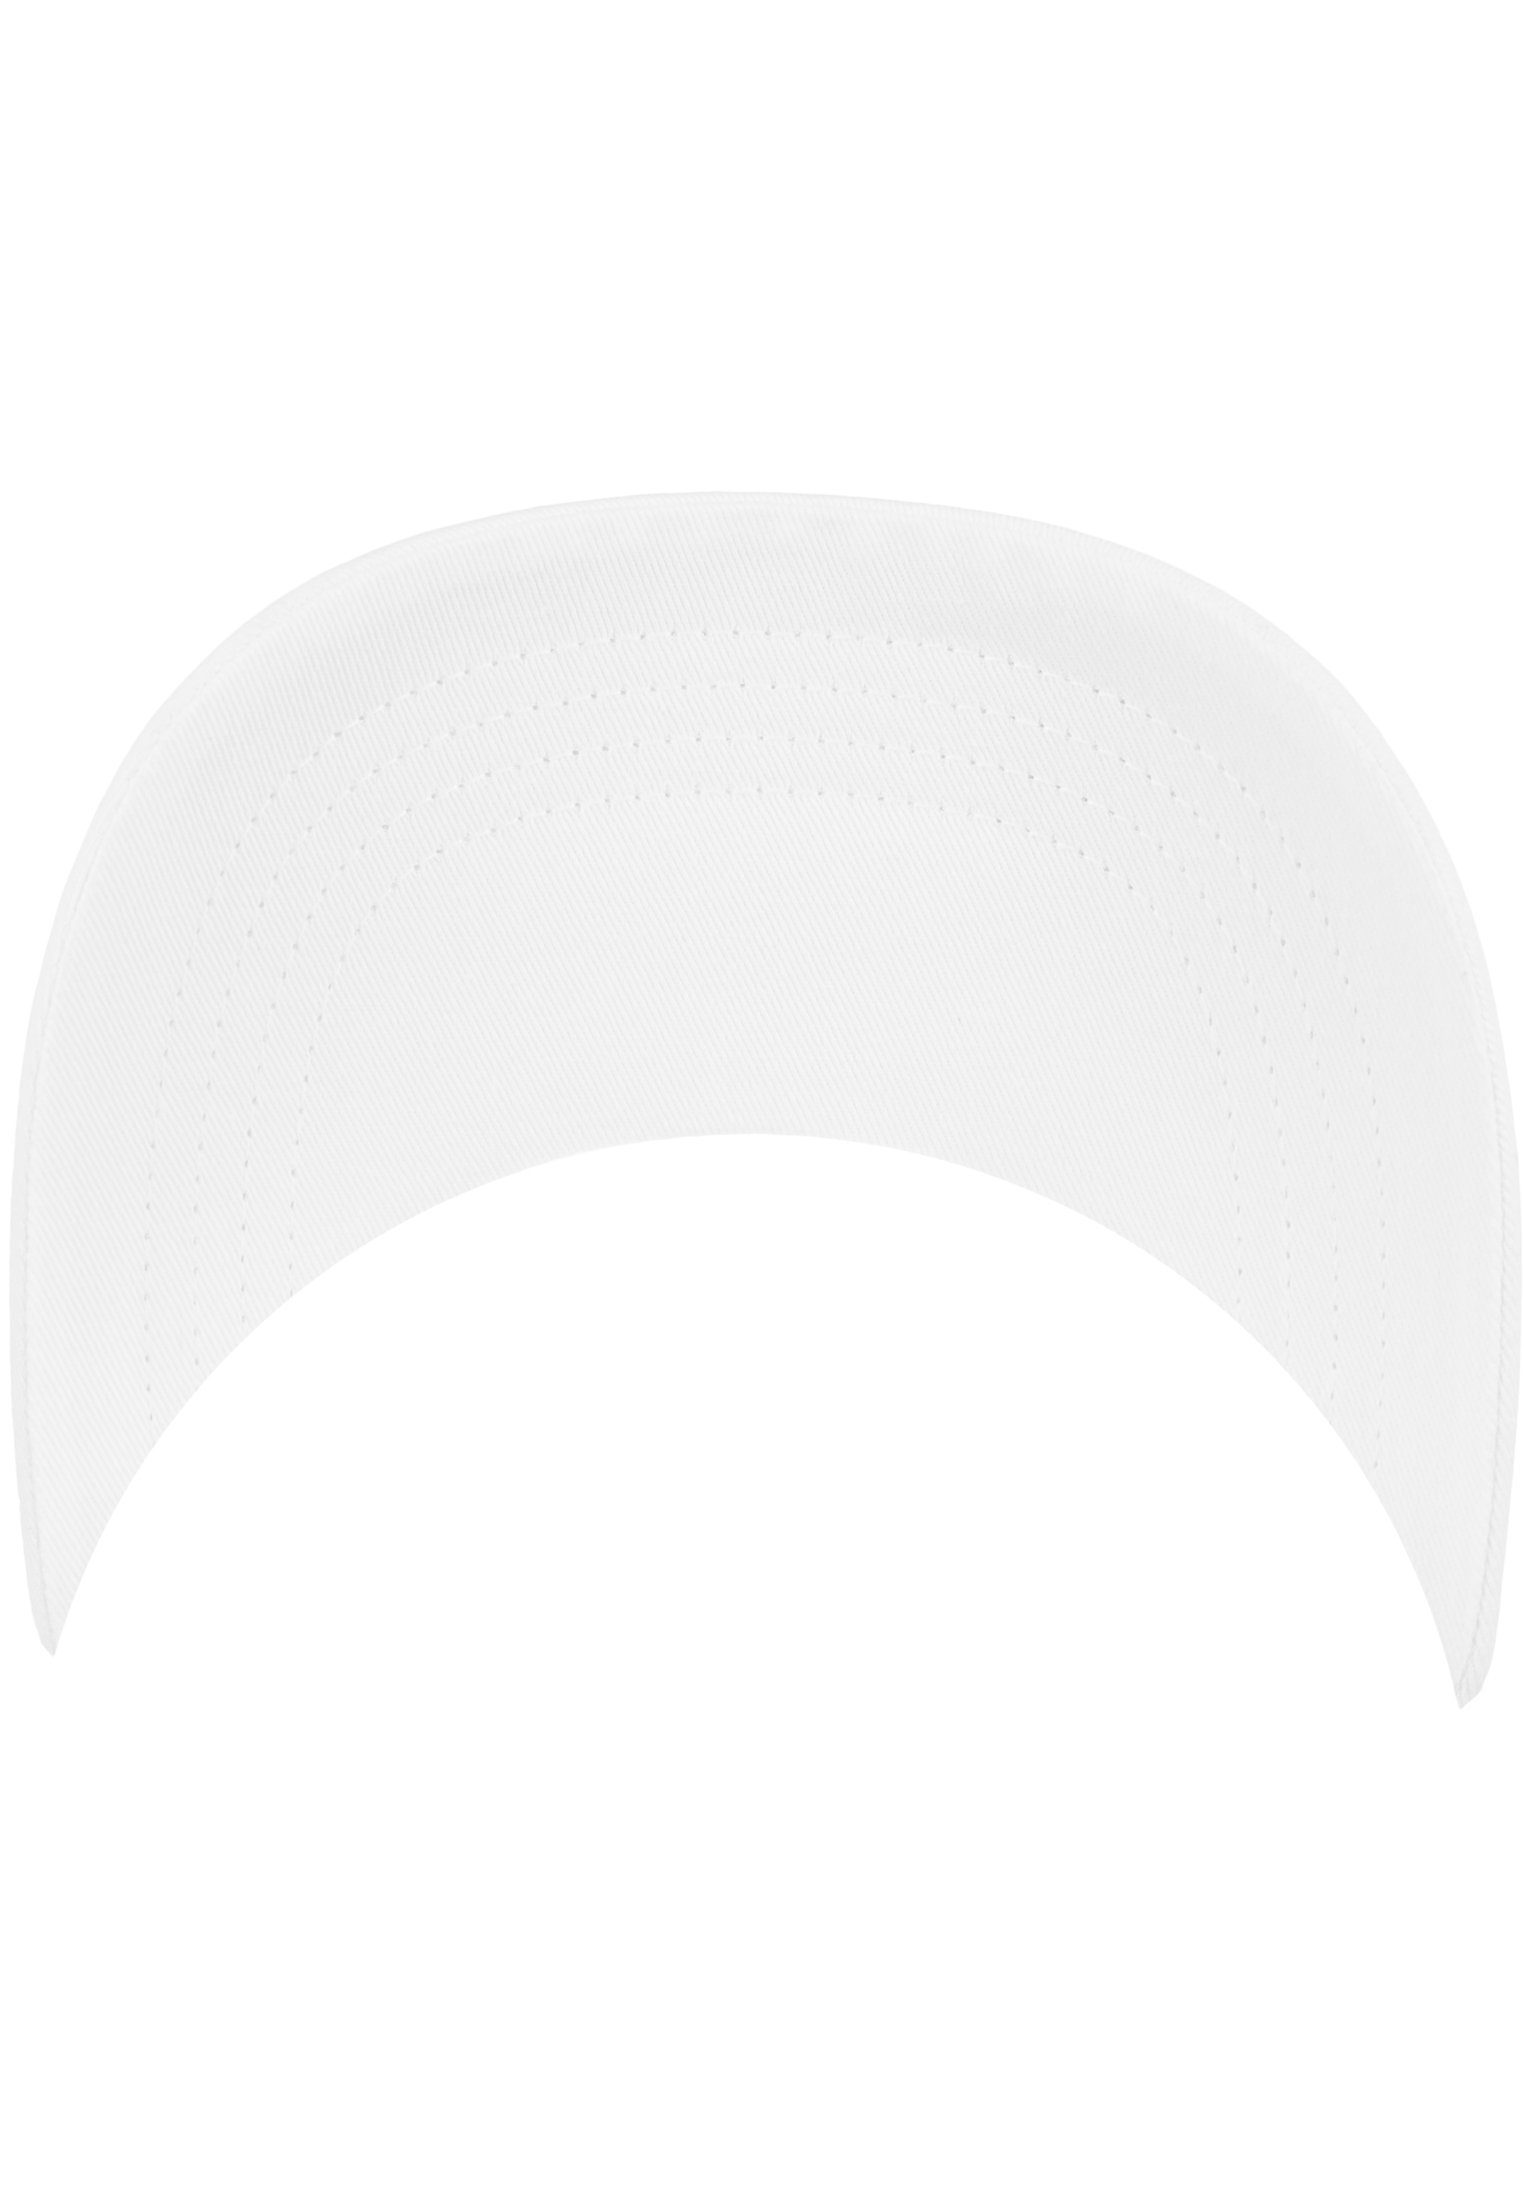 6245CM Low Cotton Profile Flexfit White Cap Flex Flexfit Twill